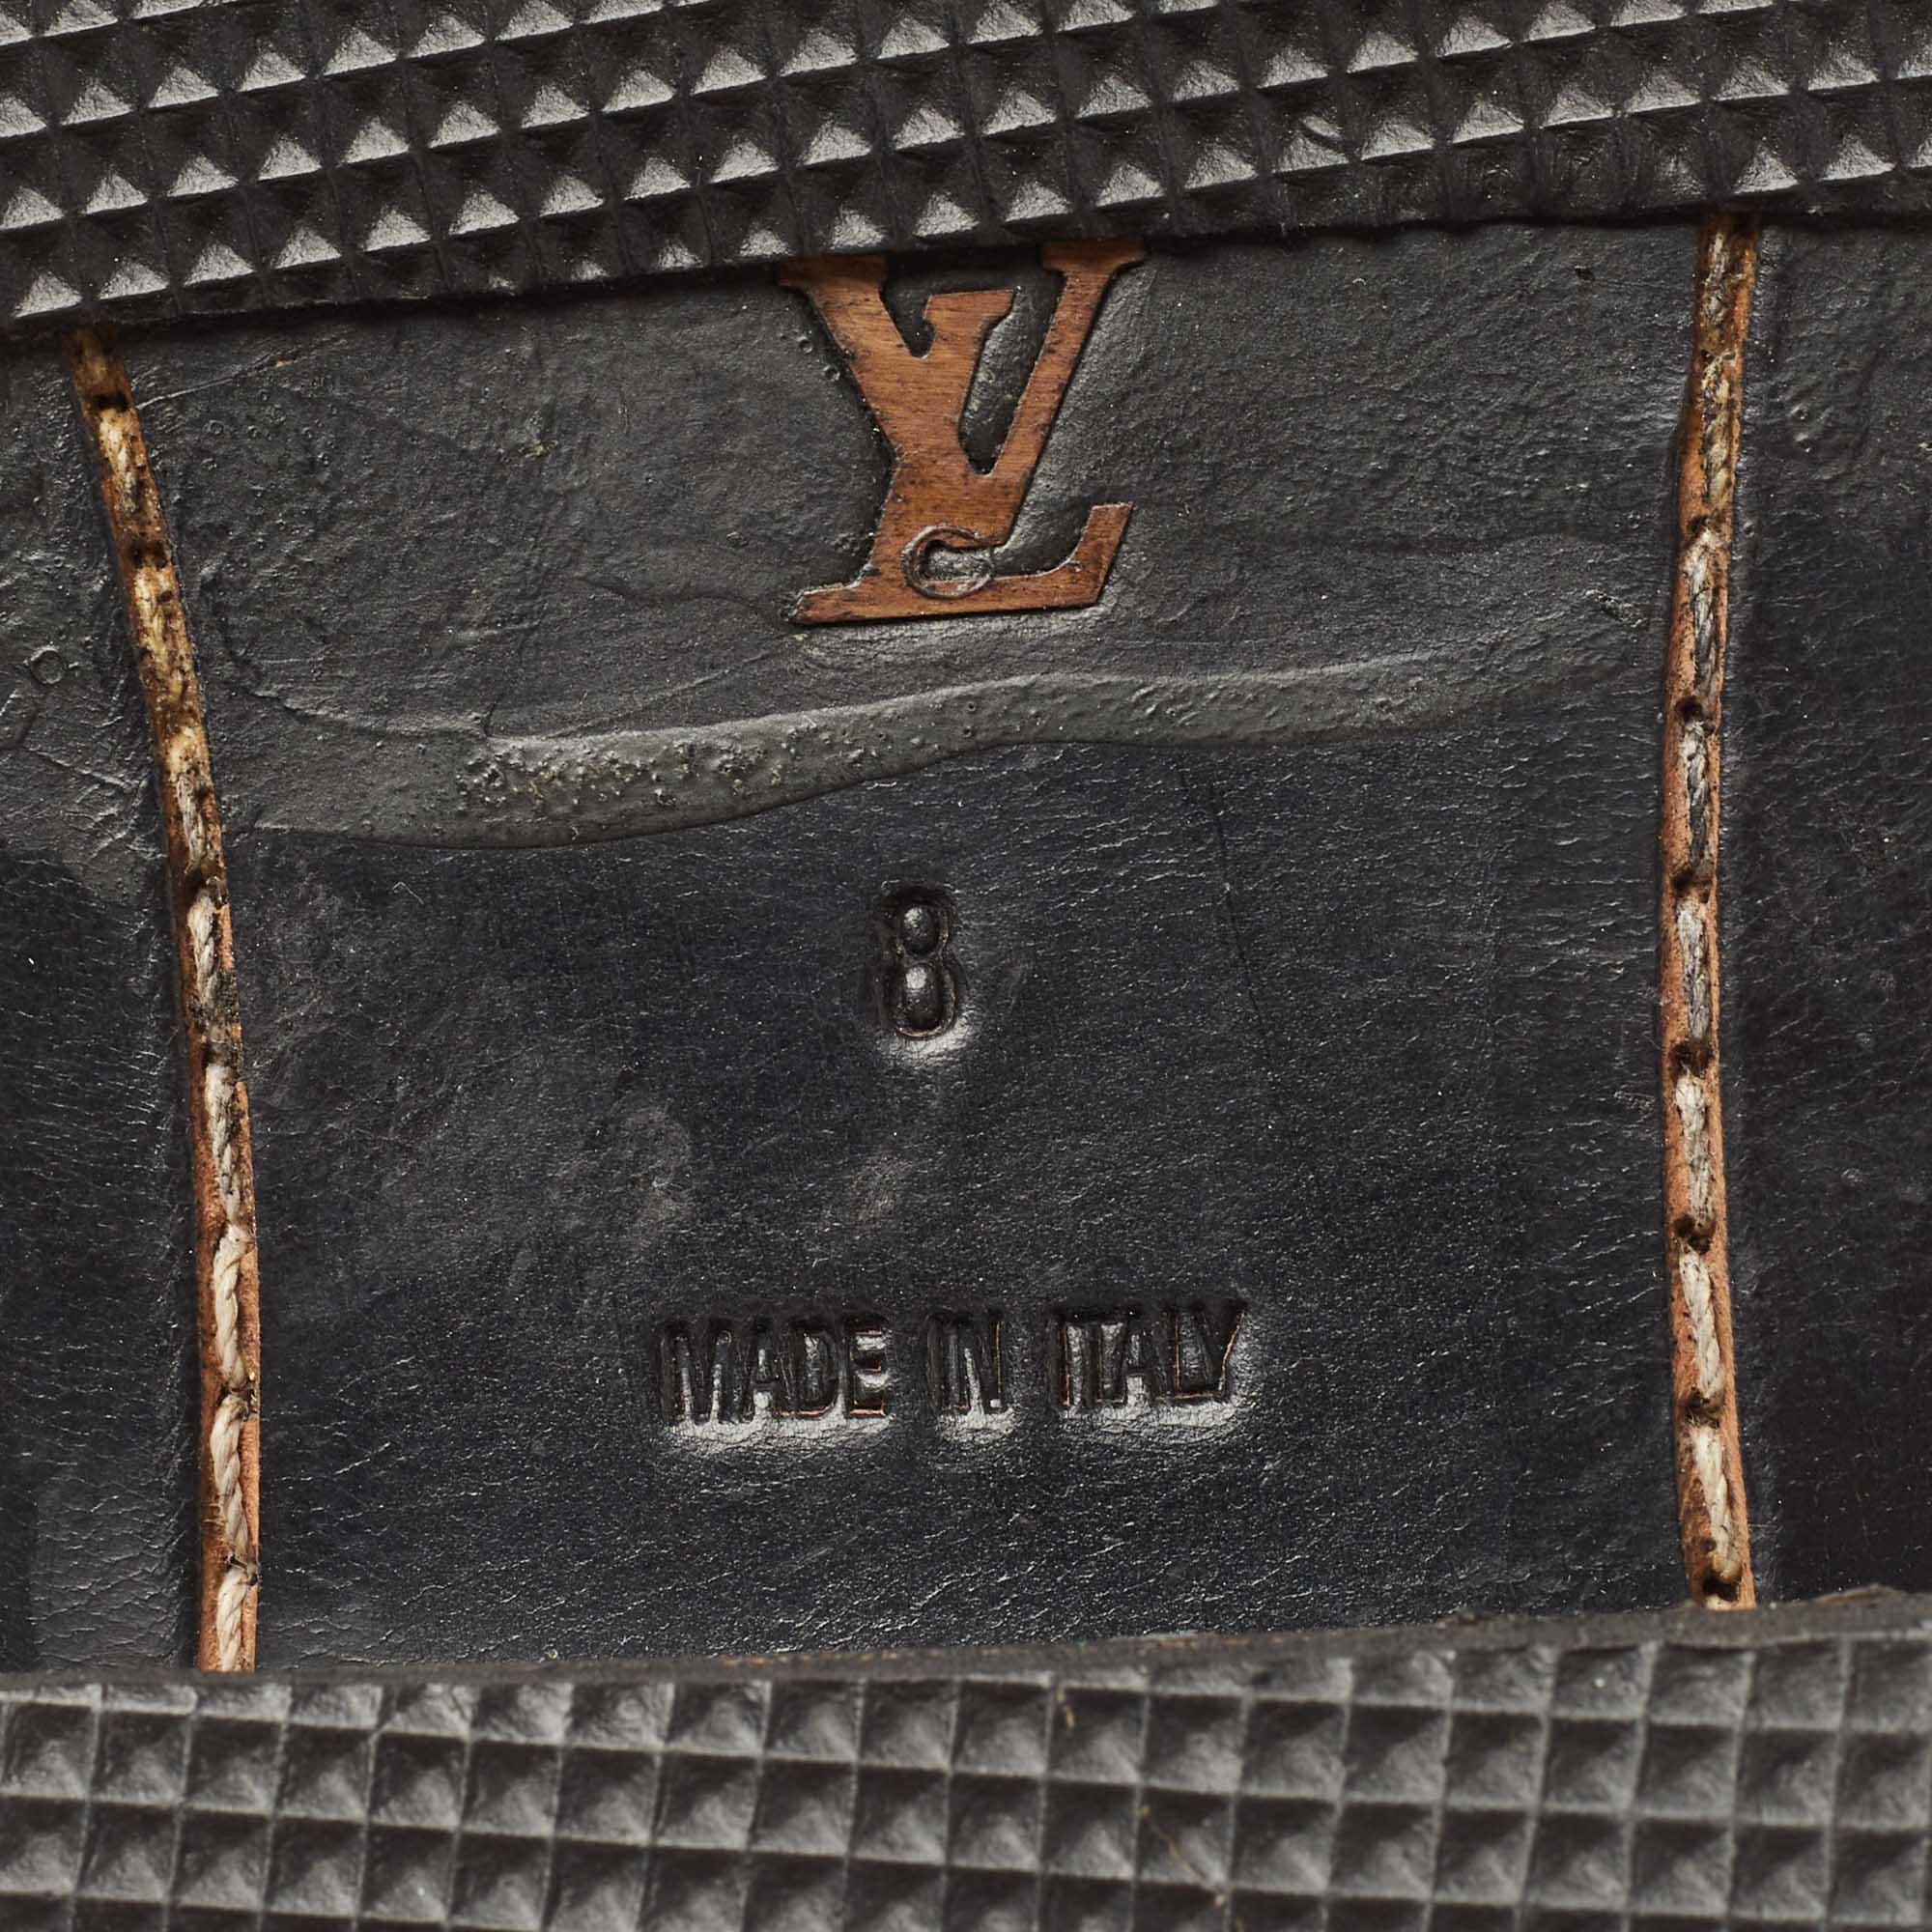 Louis Vuitton Black Leather Calf Length Boots Size 42